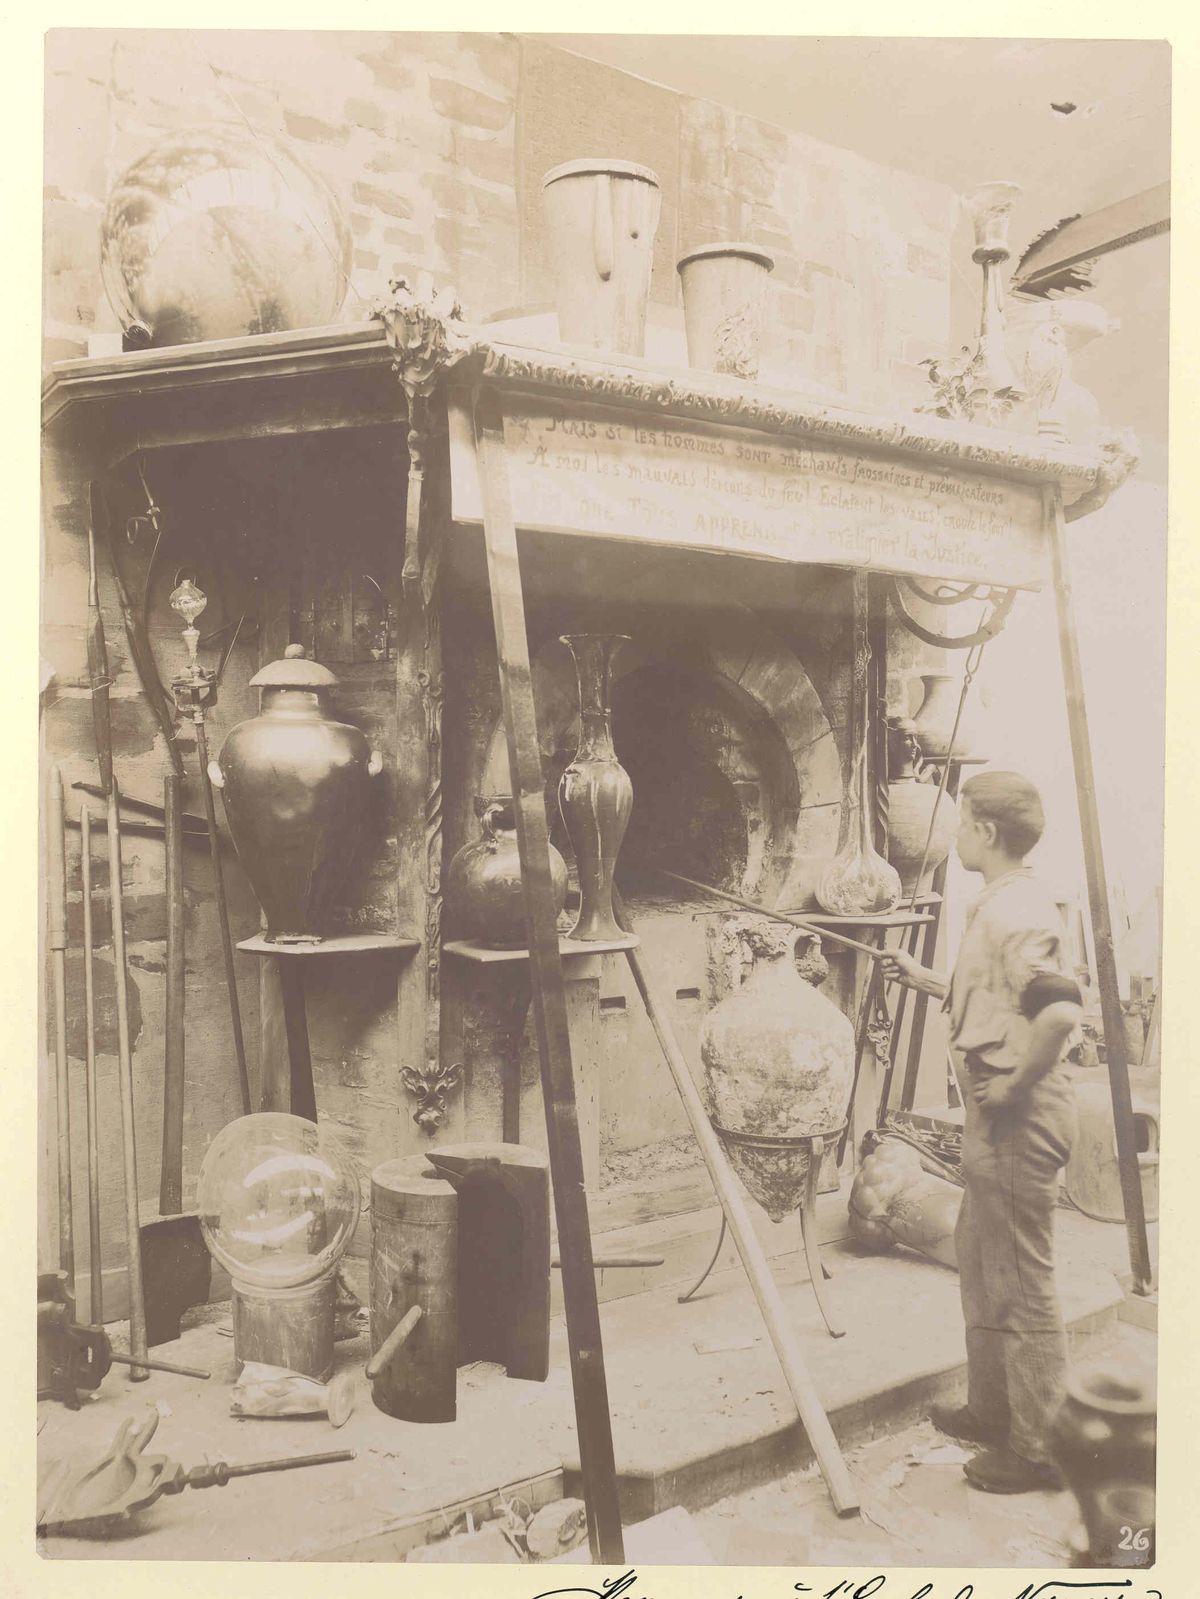 Exposition Universelle, Paris, 1900, Reconstitution d'un four verrier, tirage photographique ancien